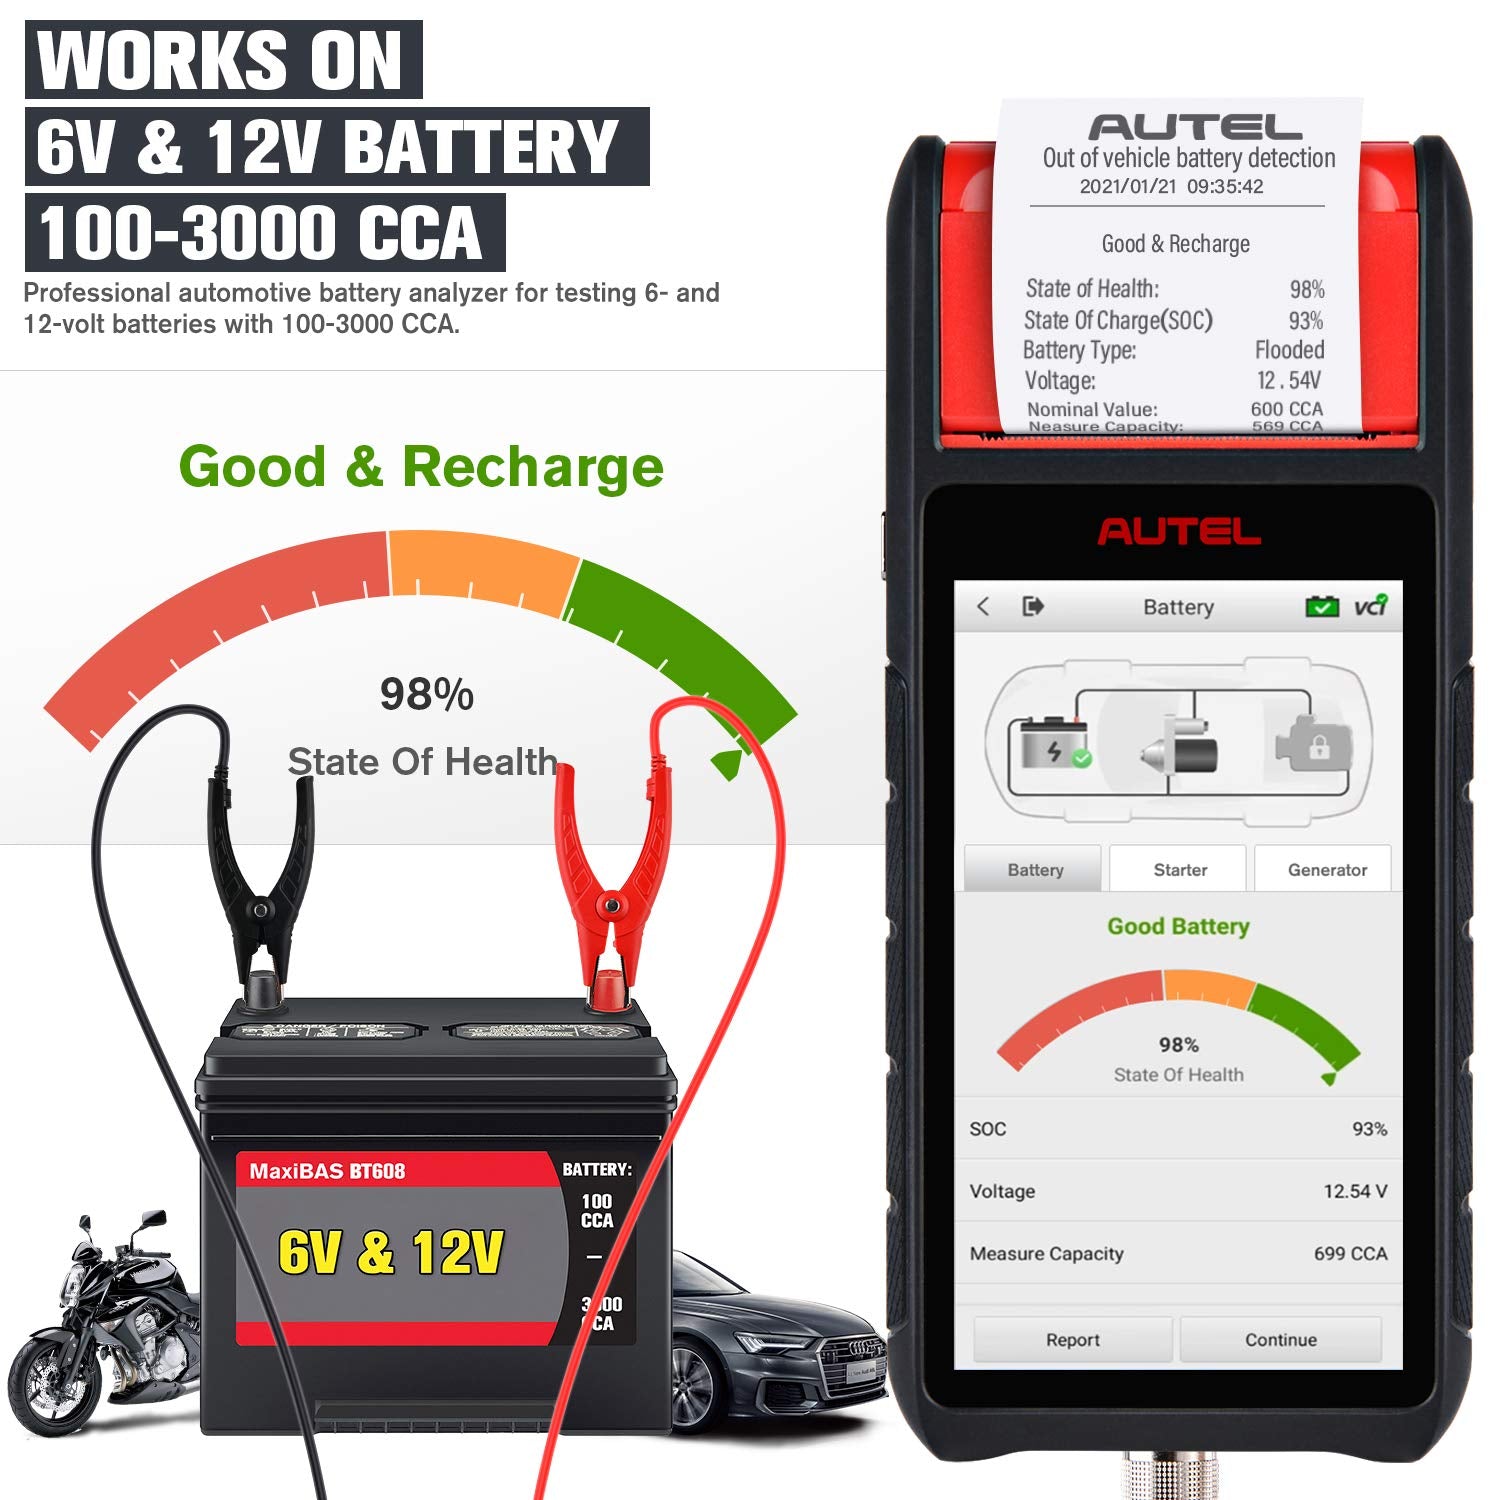 Autel MaxiBAS BT608 funciona com bateria de 6V e 12V 100-300cca